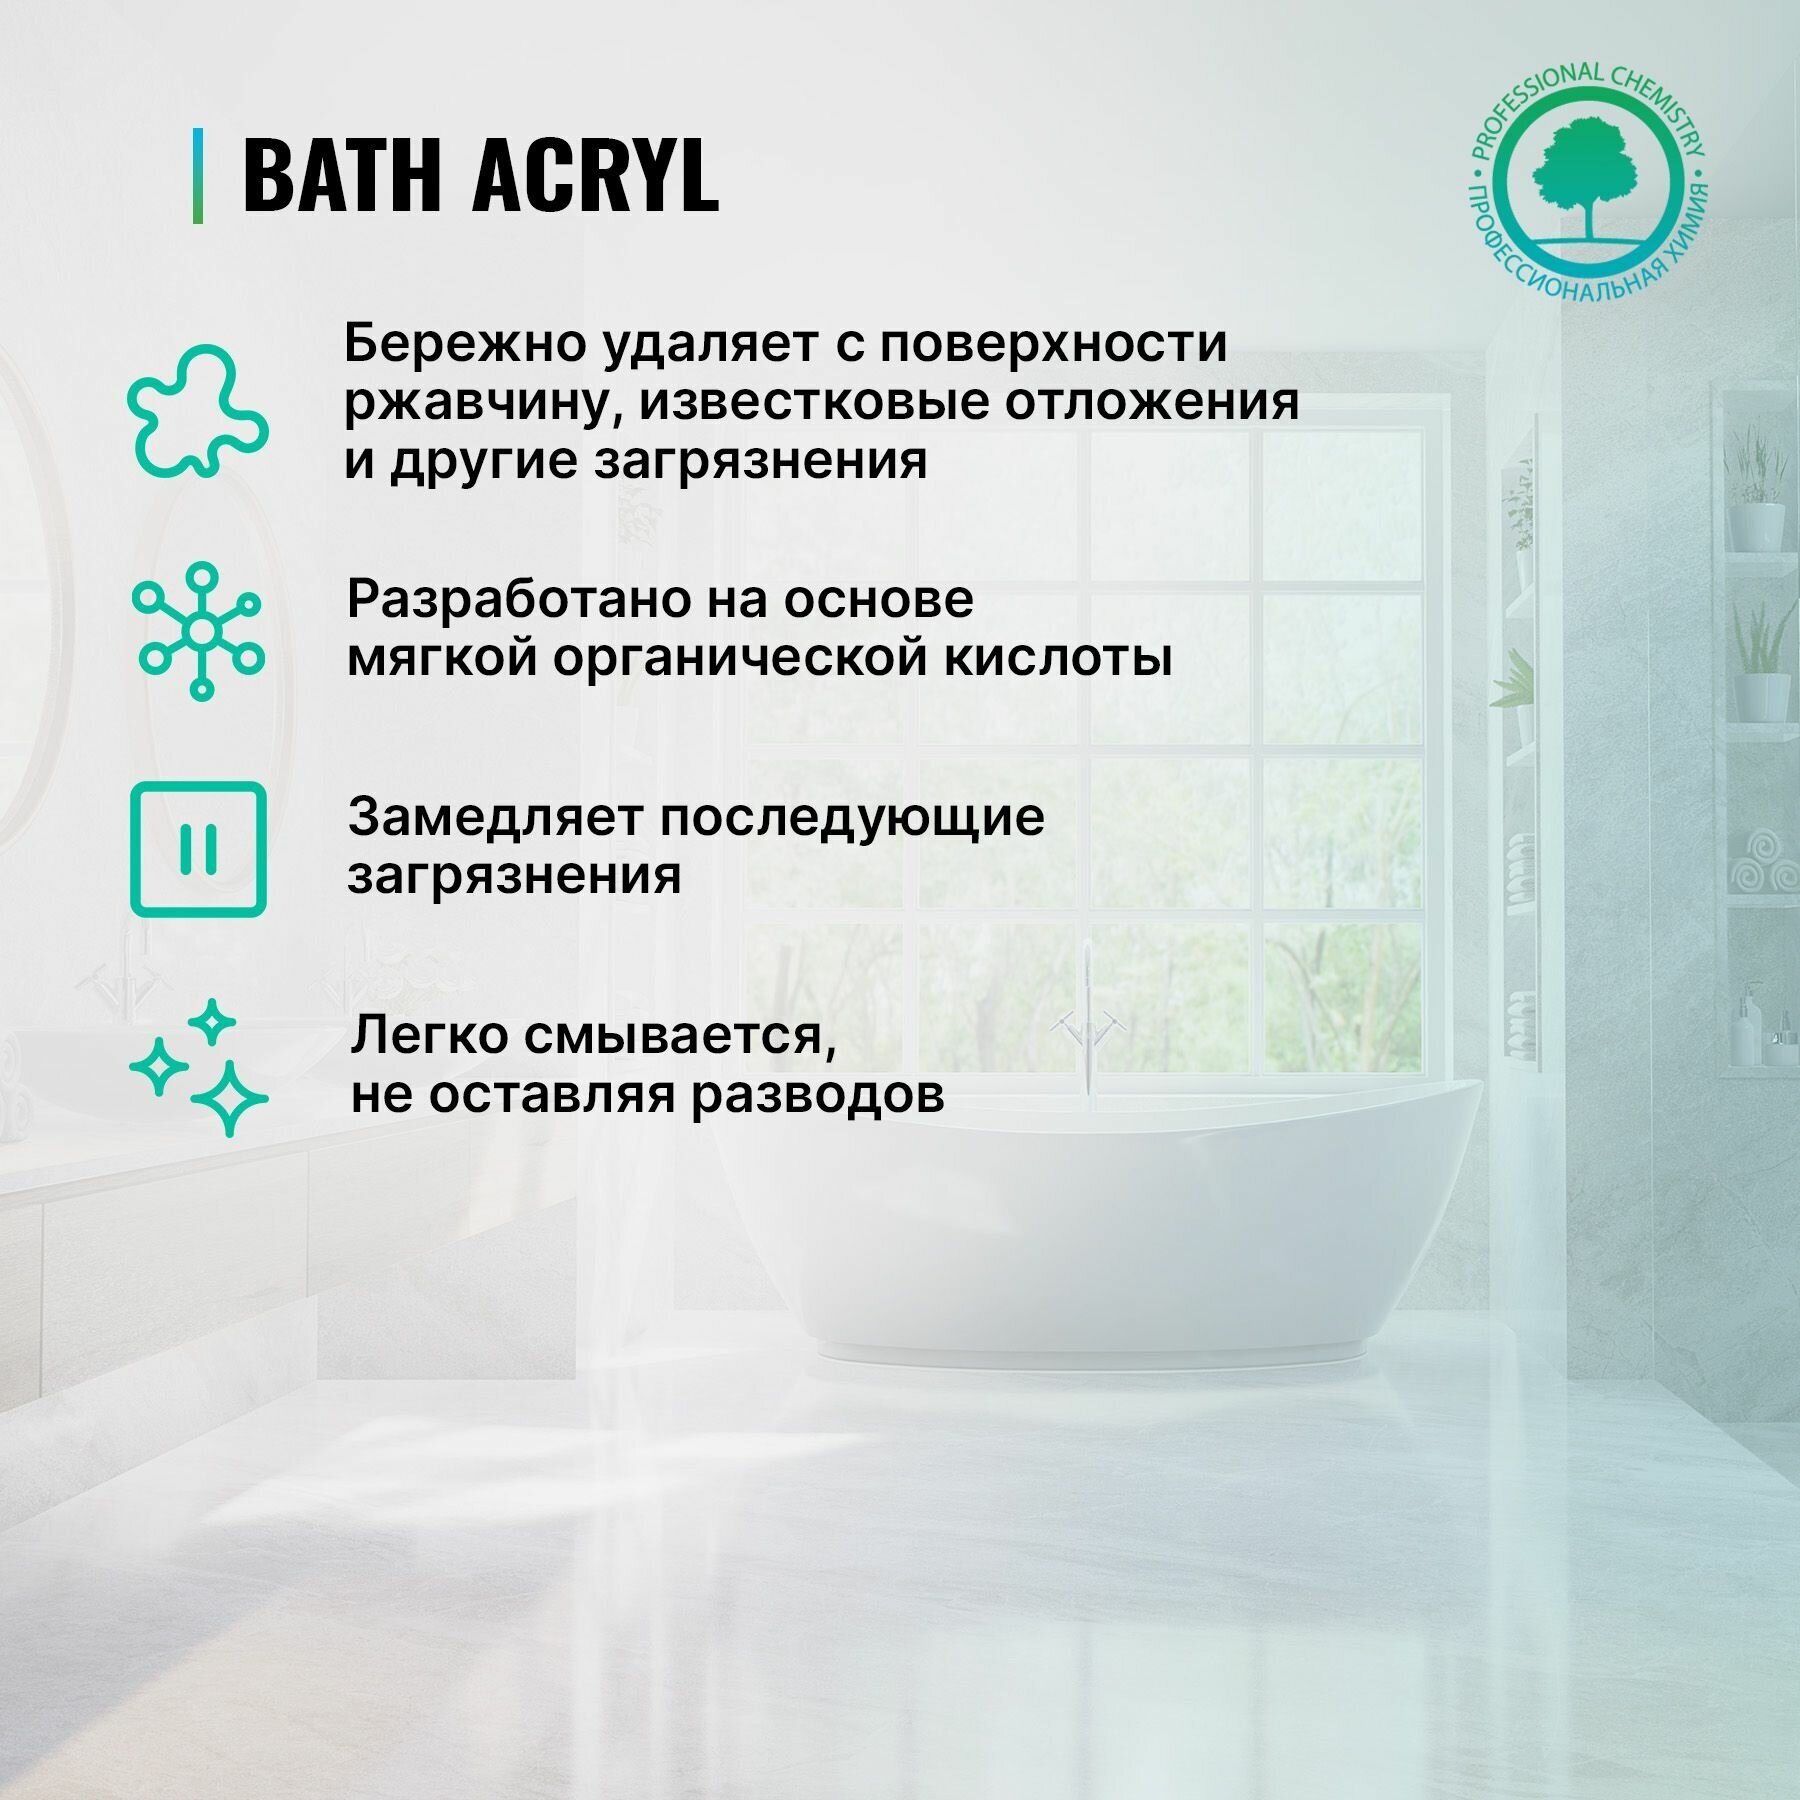 Гель для чистки акриловых ванн и душевых кабин Bath Acryl PROSEPT